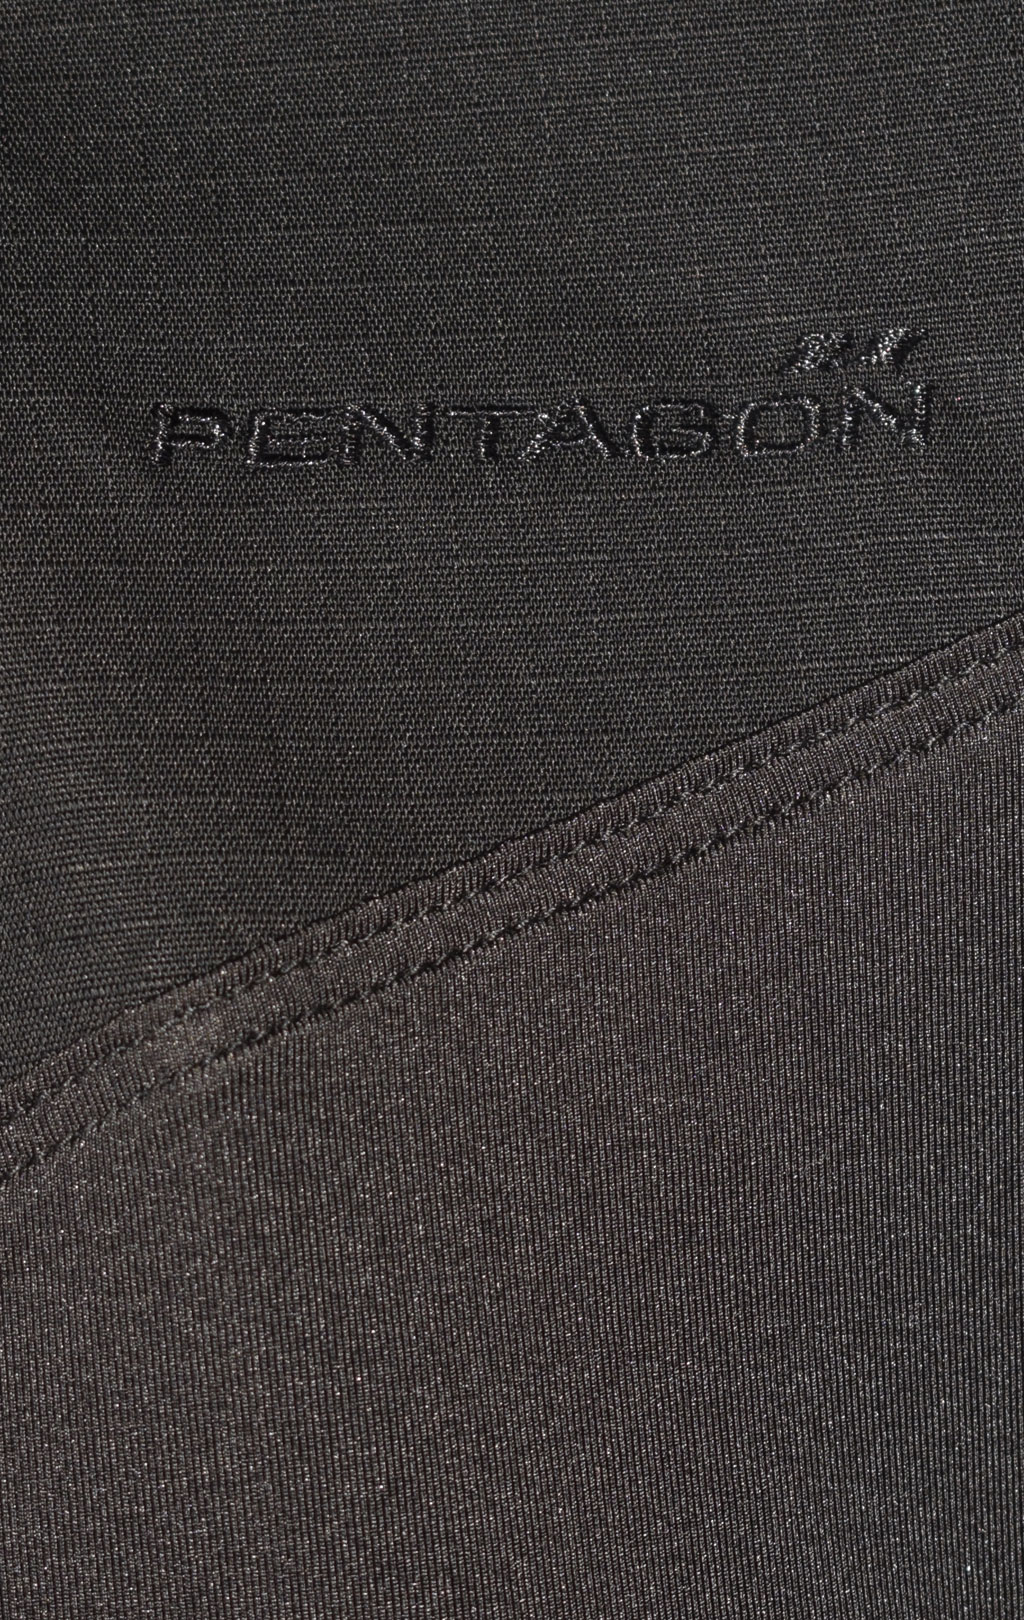 Рубашка Combat shirt Pentagon RANGER TAC-FRESH black 02013 